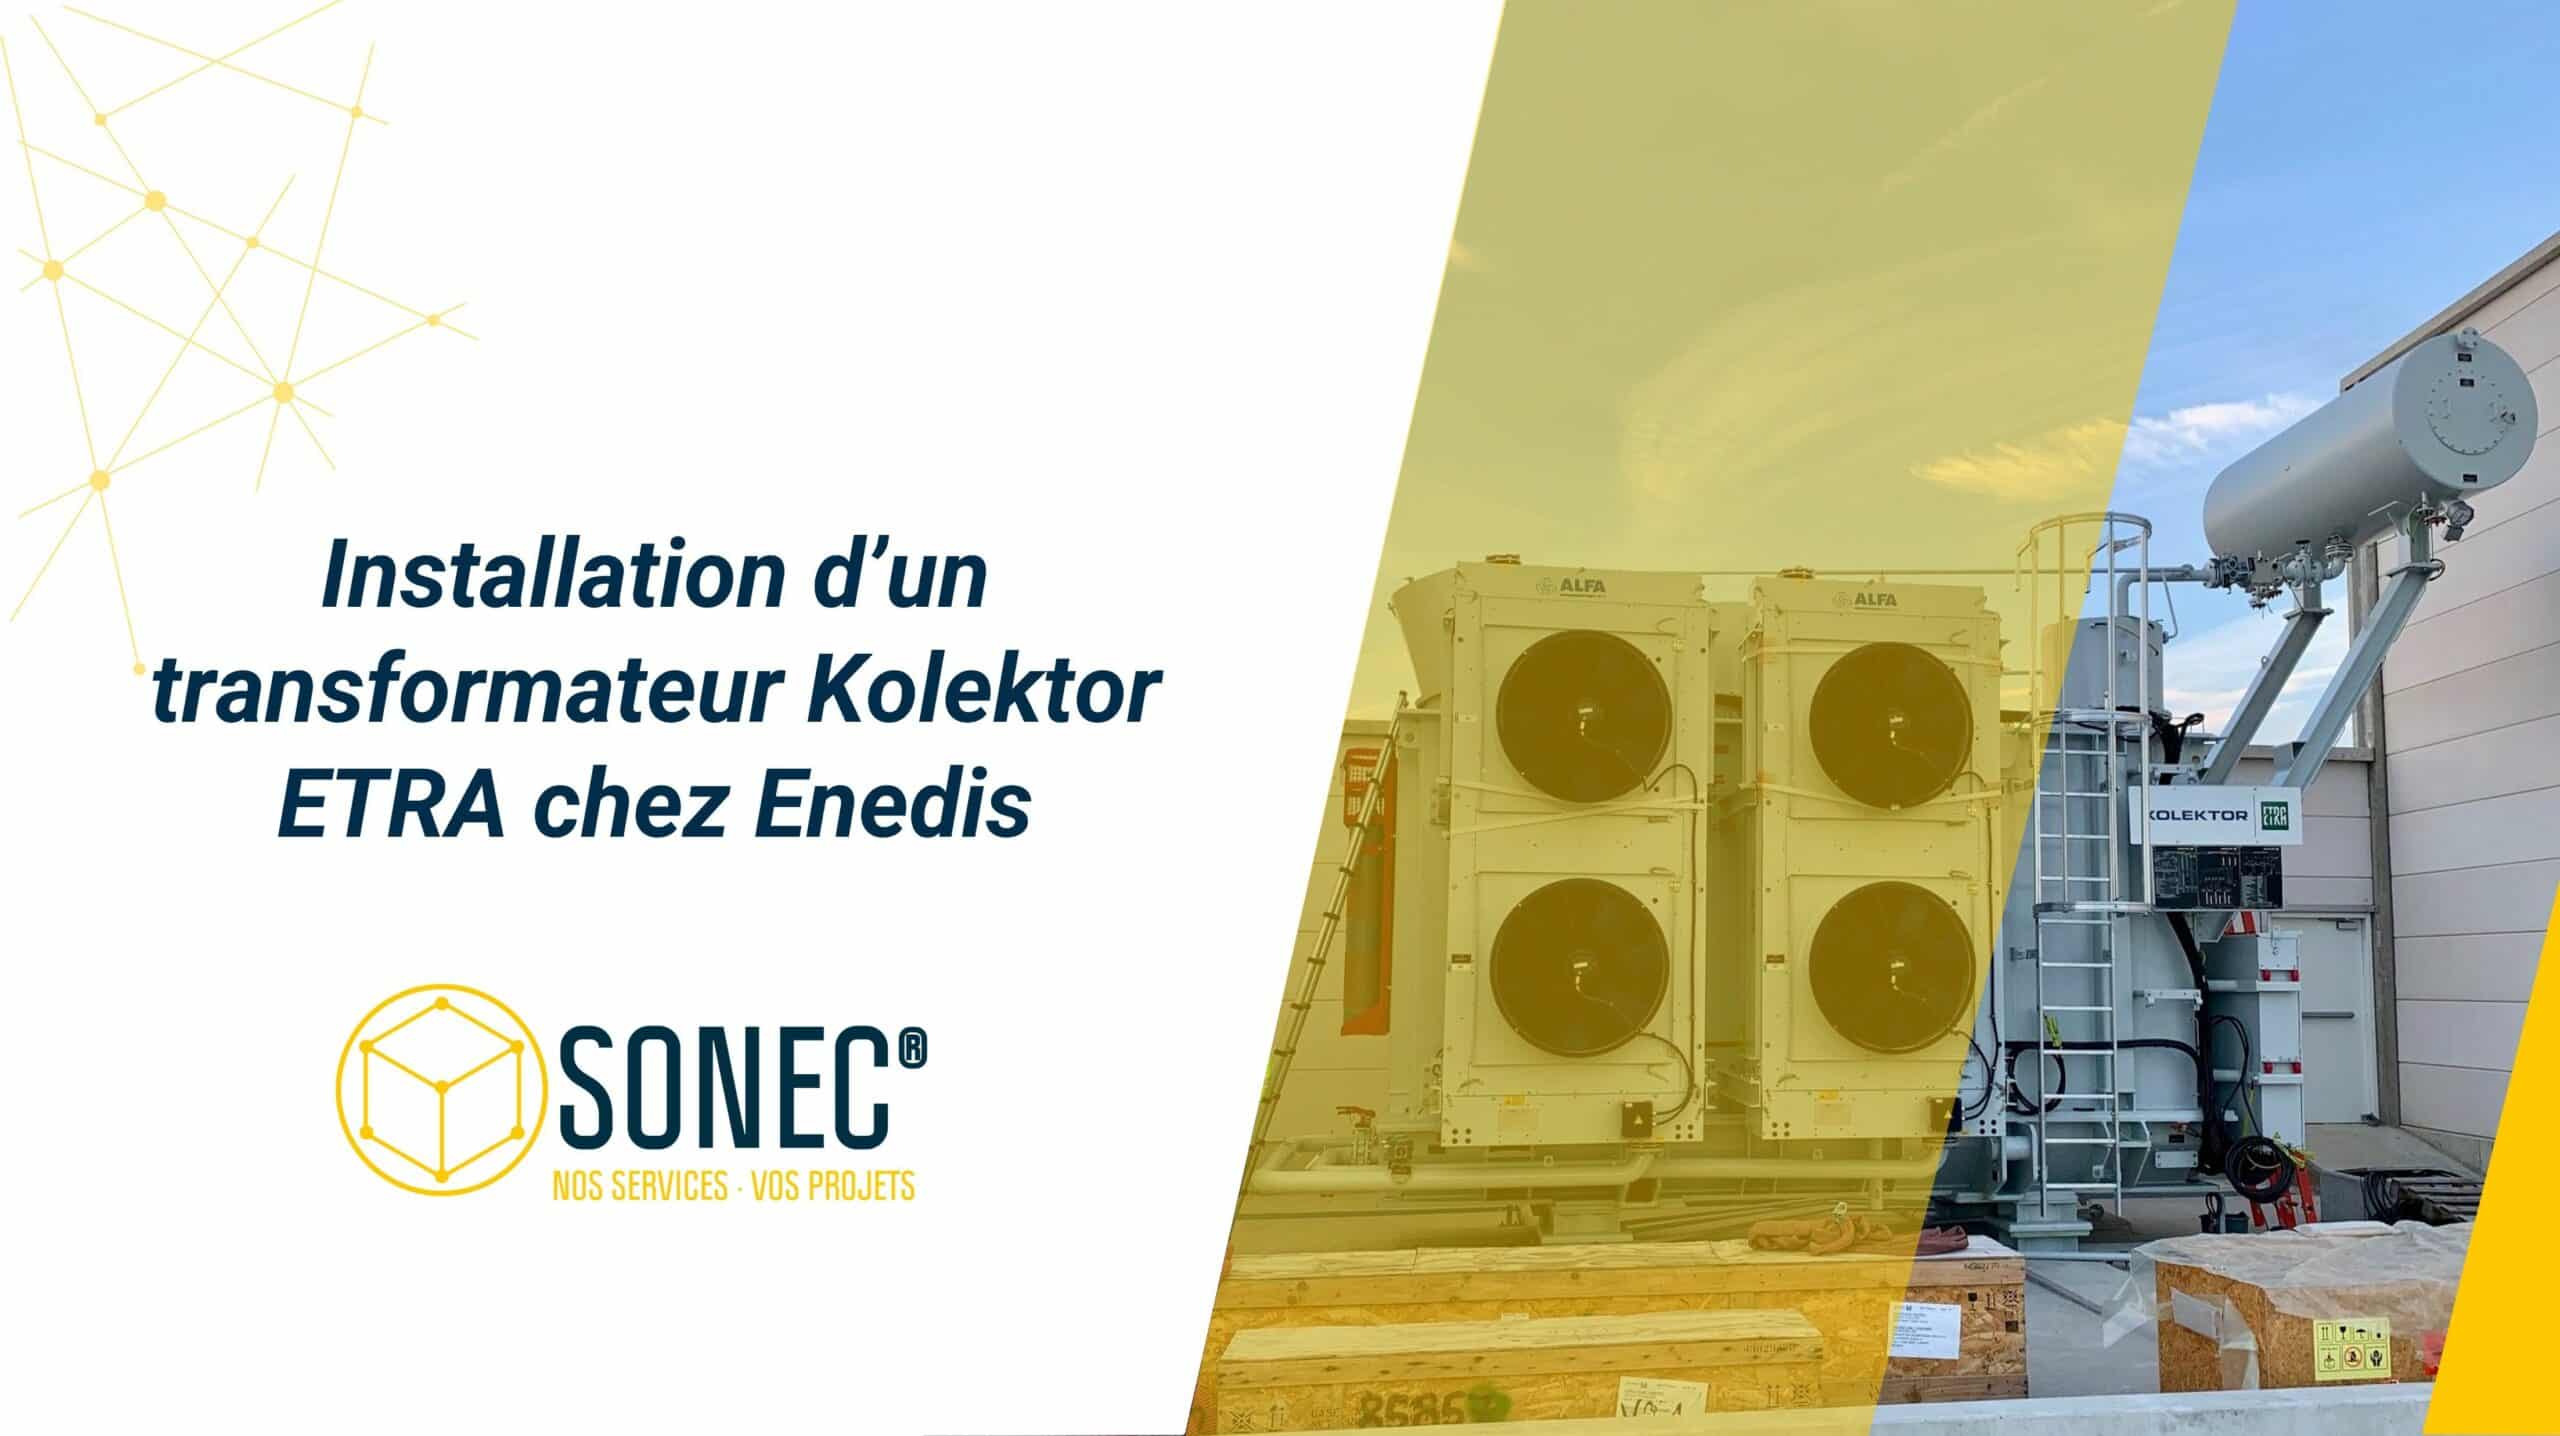 SONEC installation: Kolektor ETRA transformer at Enedis